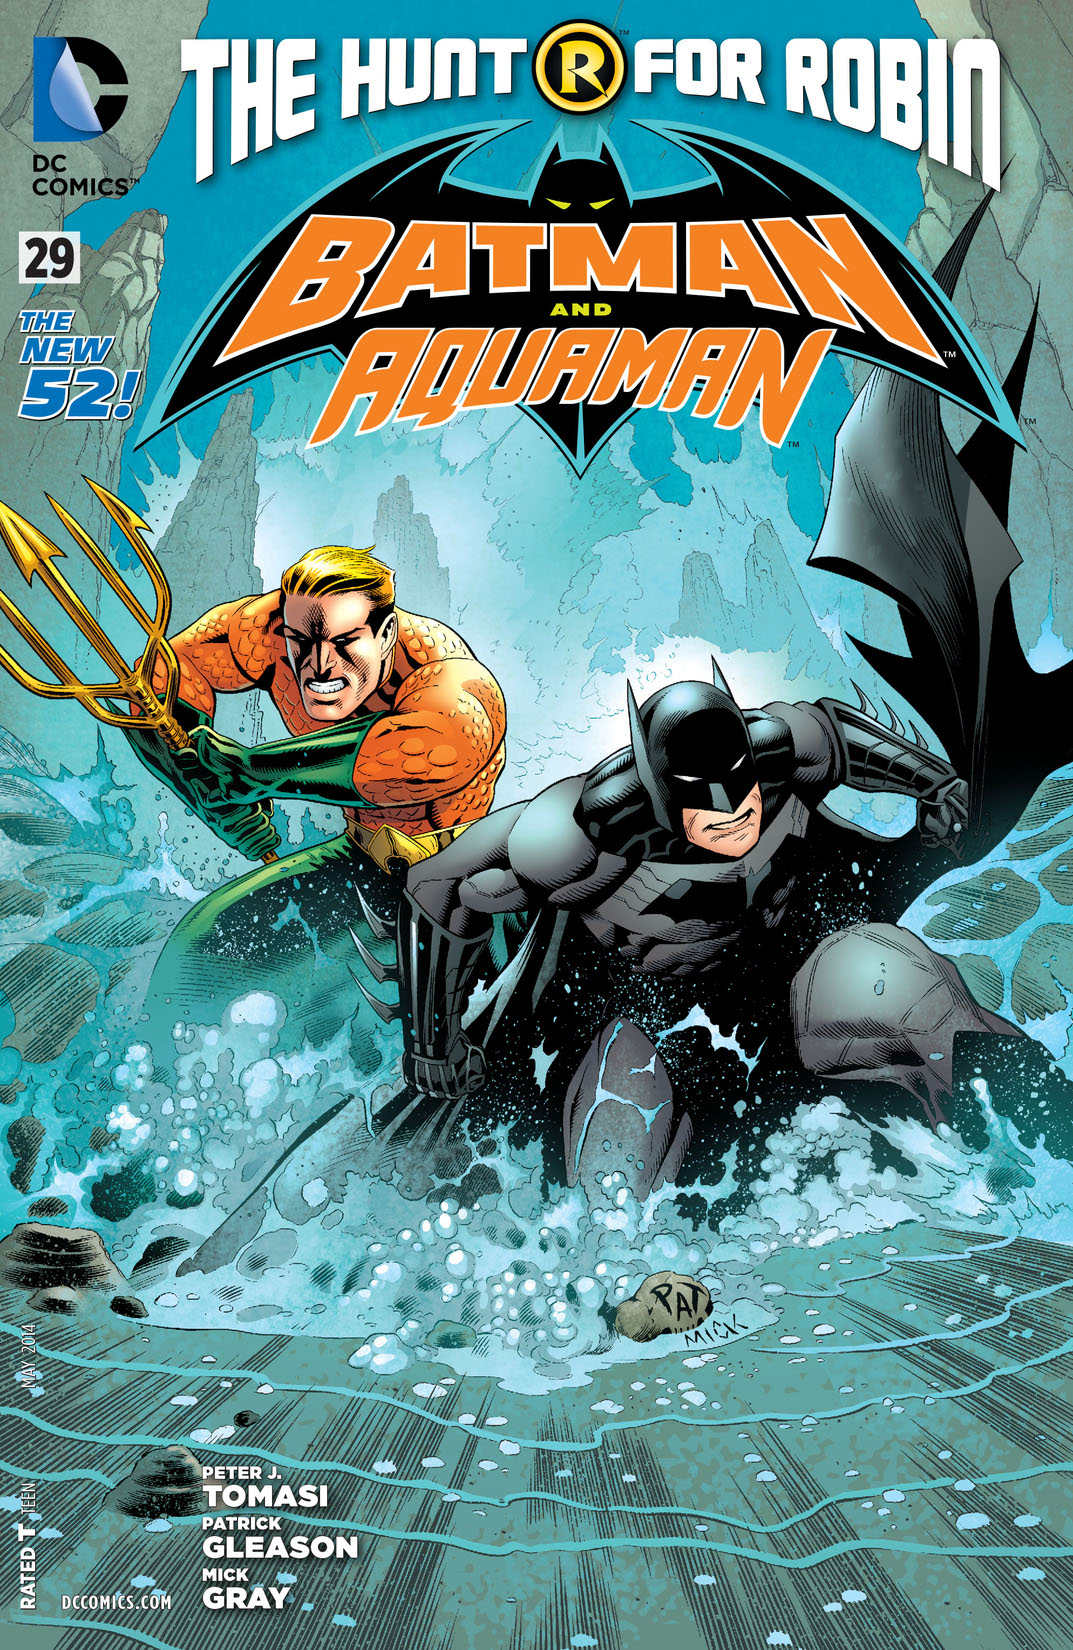 Batman and Aquaman (2011-) #29 preview images